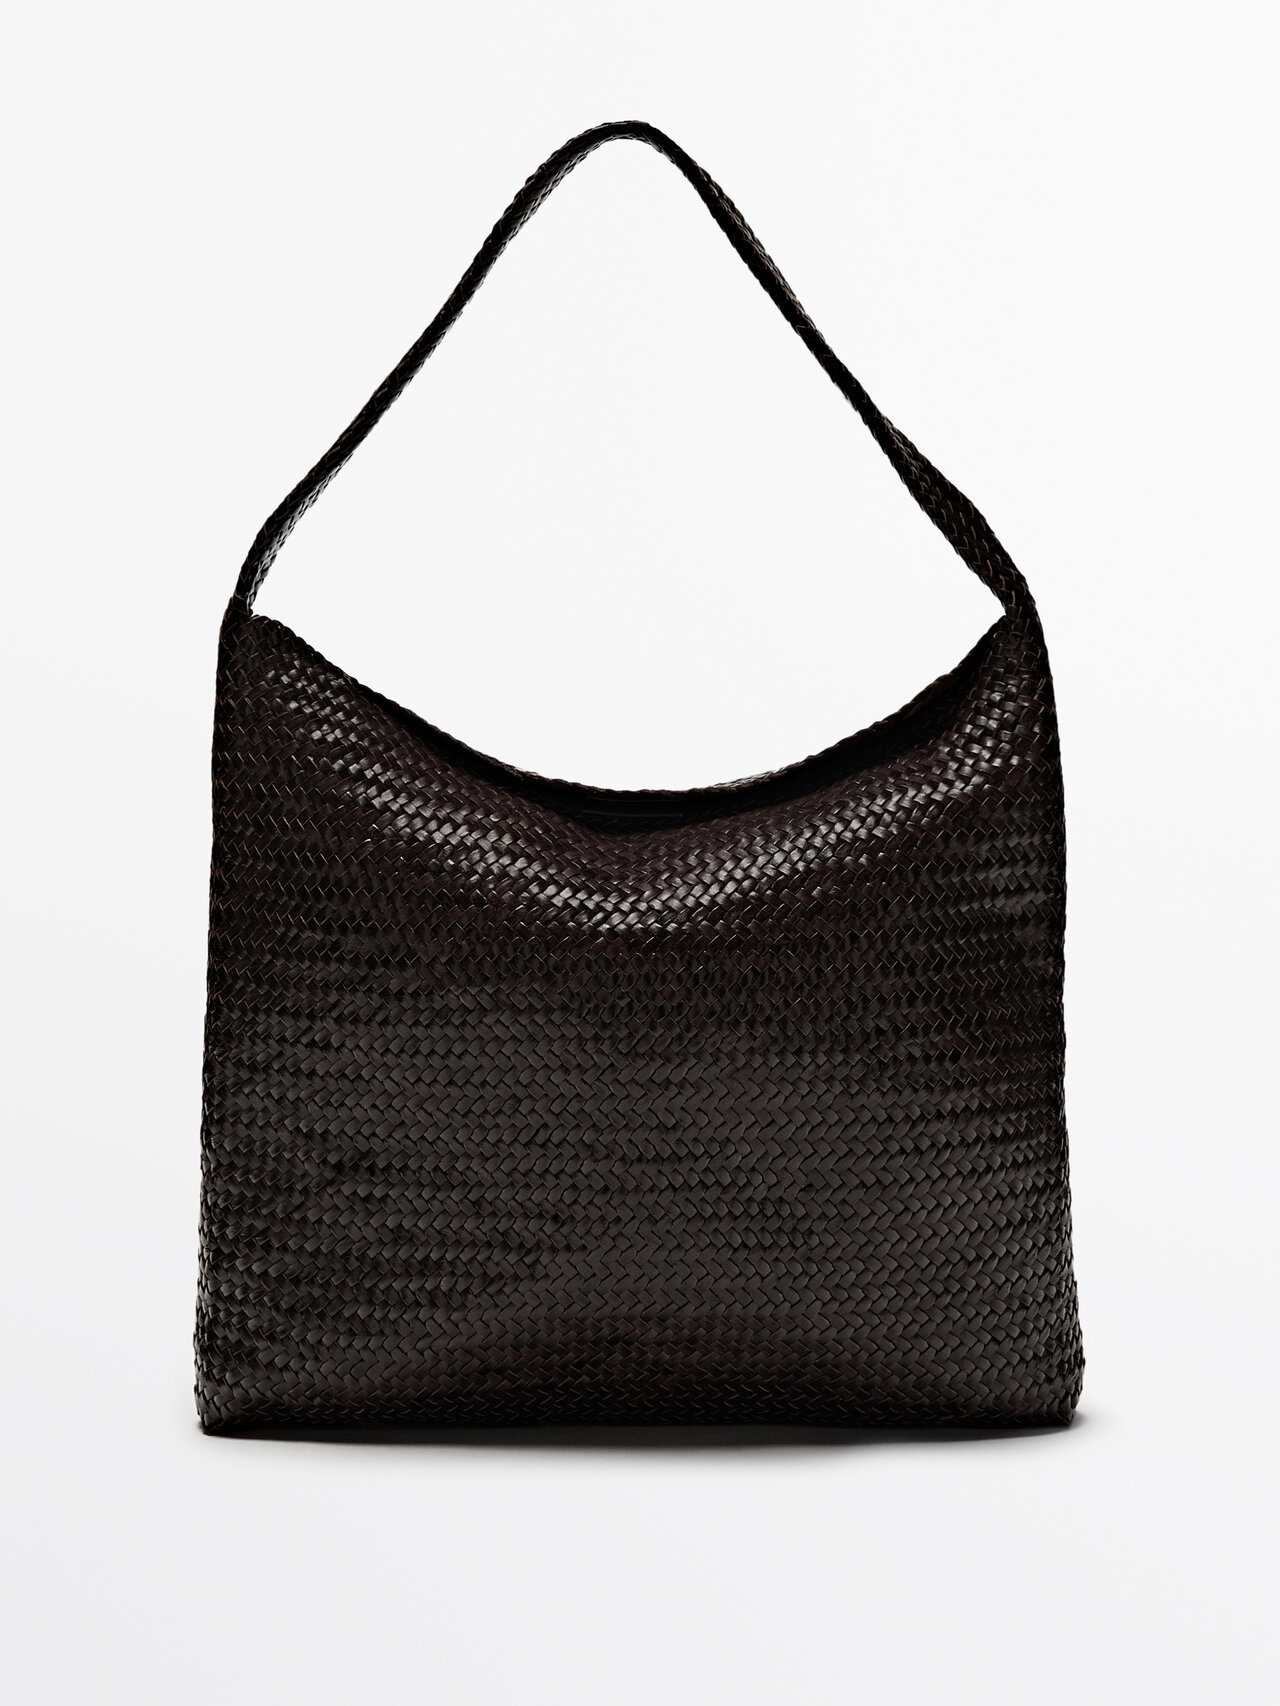 Massimo Dutti Woven Nappa Leather Bag In Black